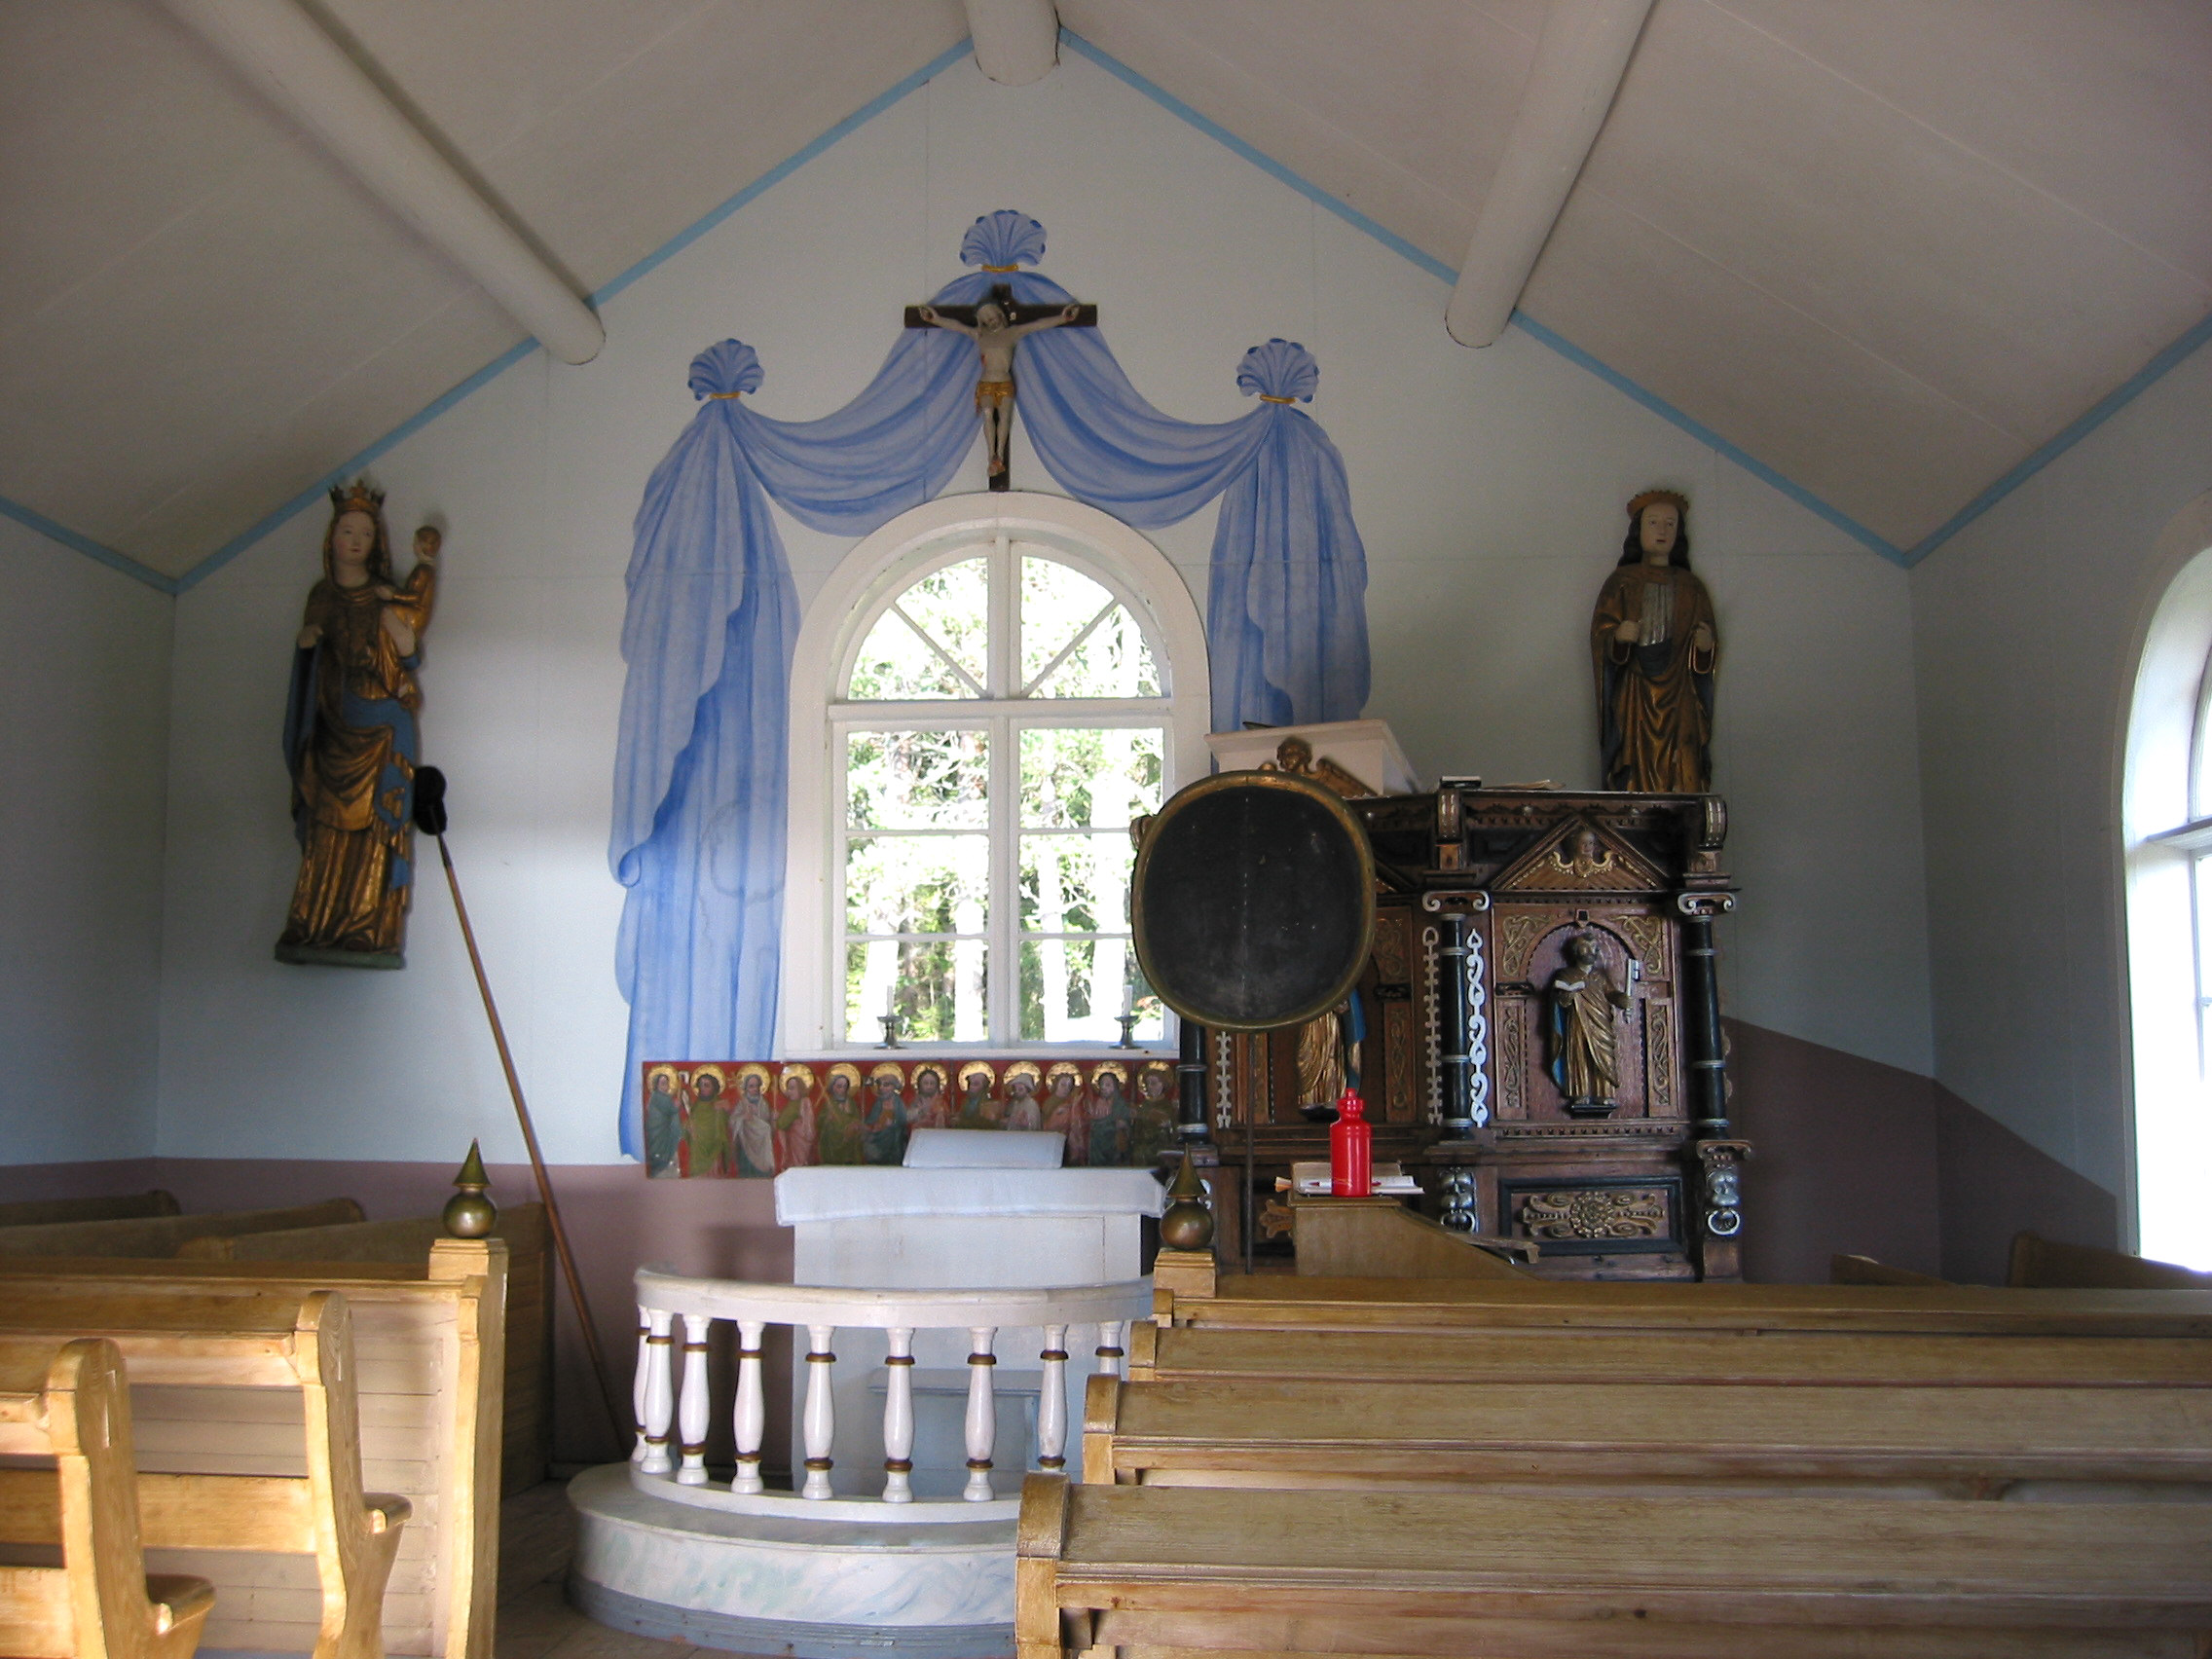 Grunnans kapell, interiör, vy mot koret från väster. 